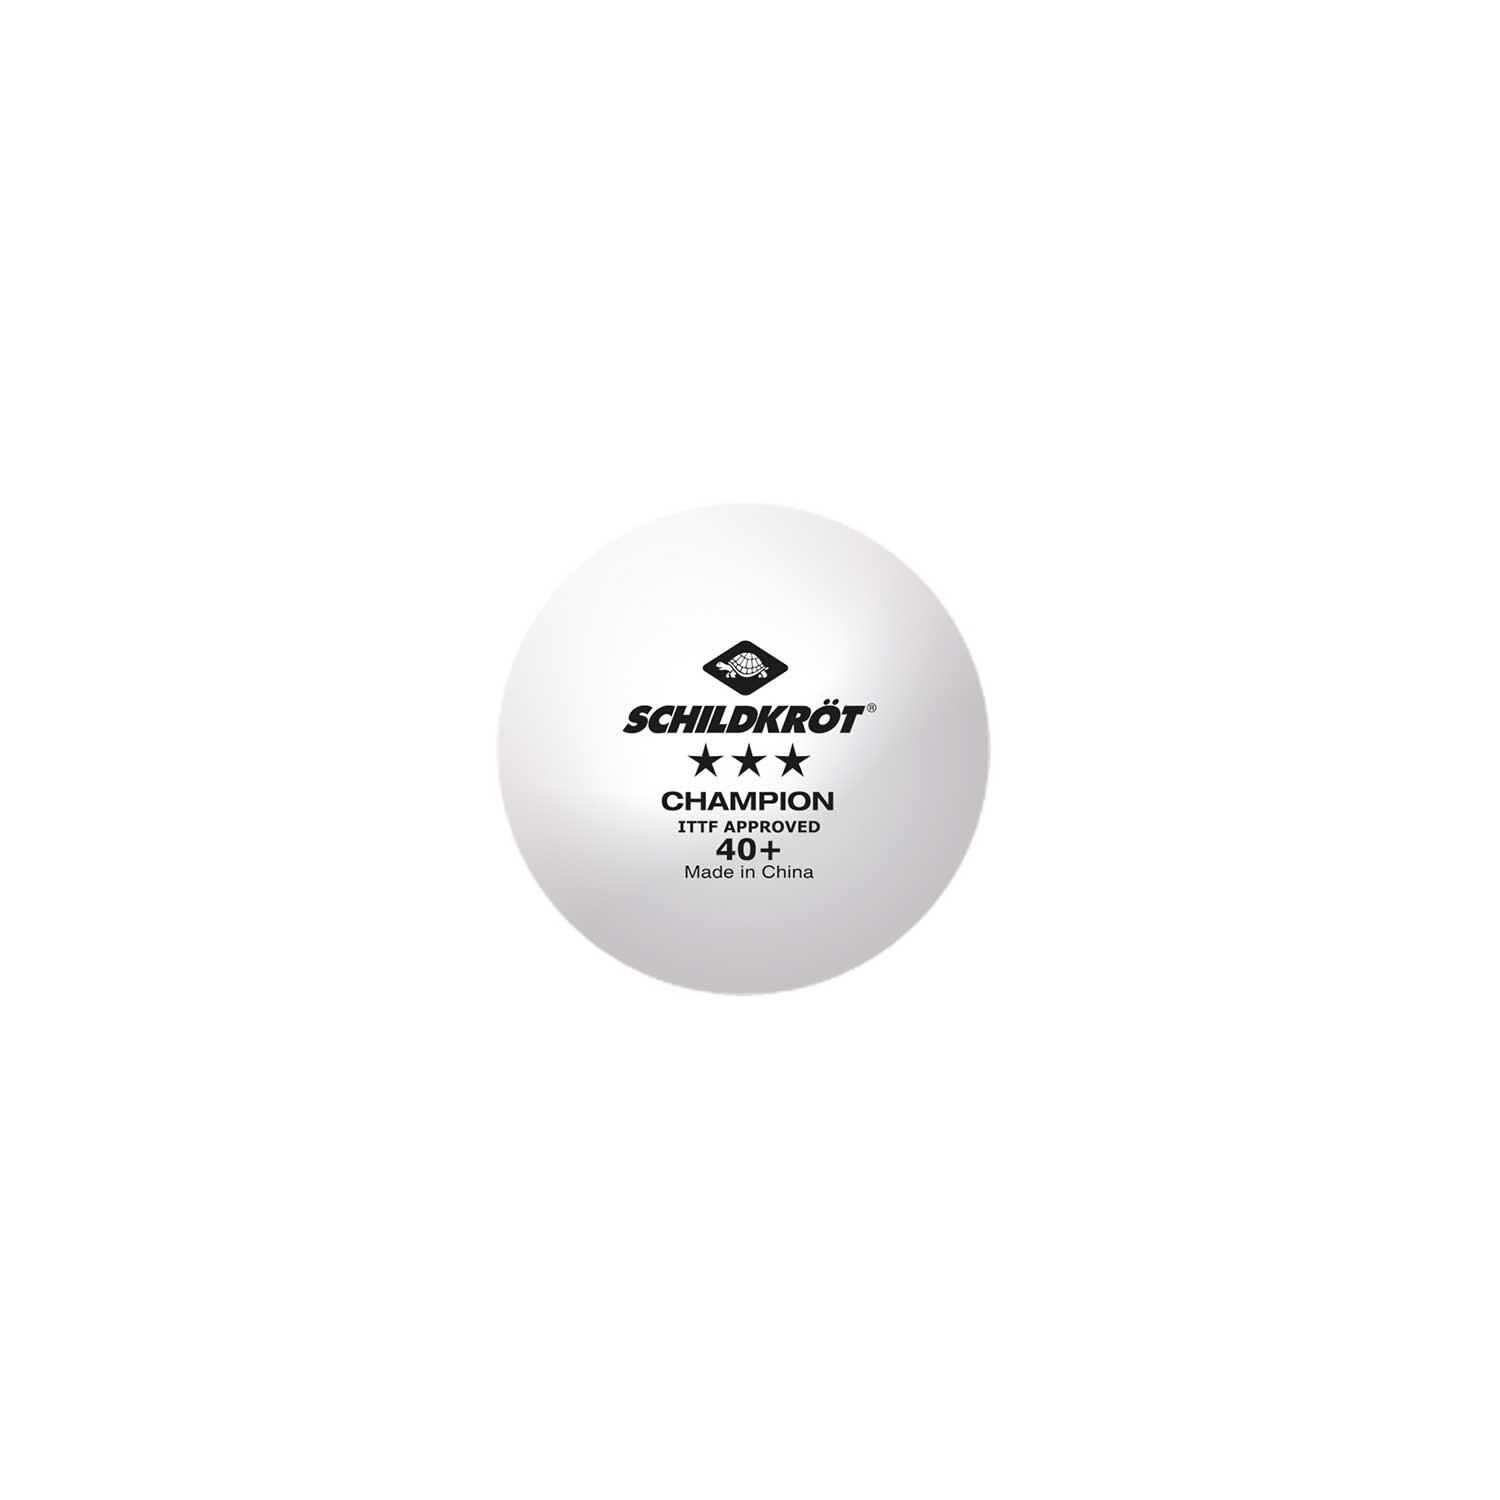 DONIC SCHILDKRÖT 3Star Champion ITTF Table Tennis Balls (Pack of 3) (White/Black)